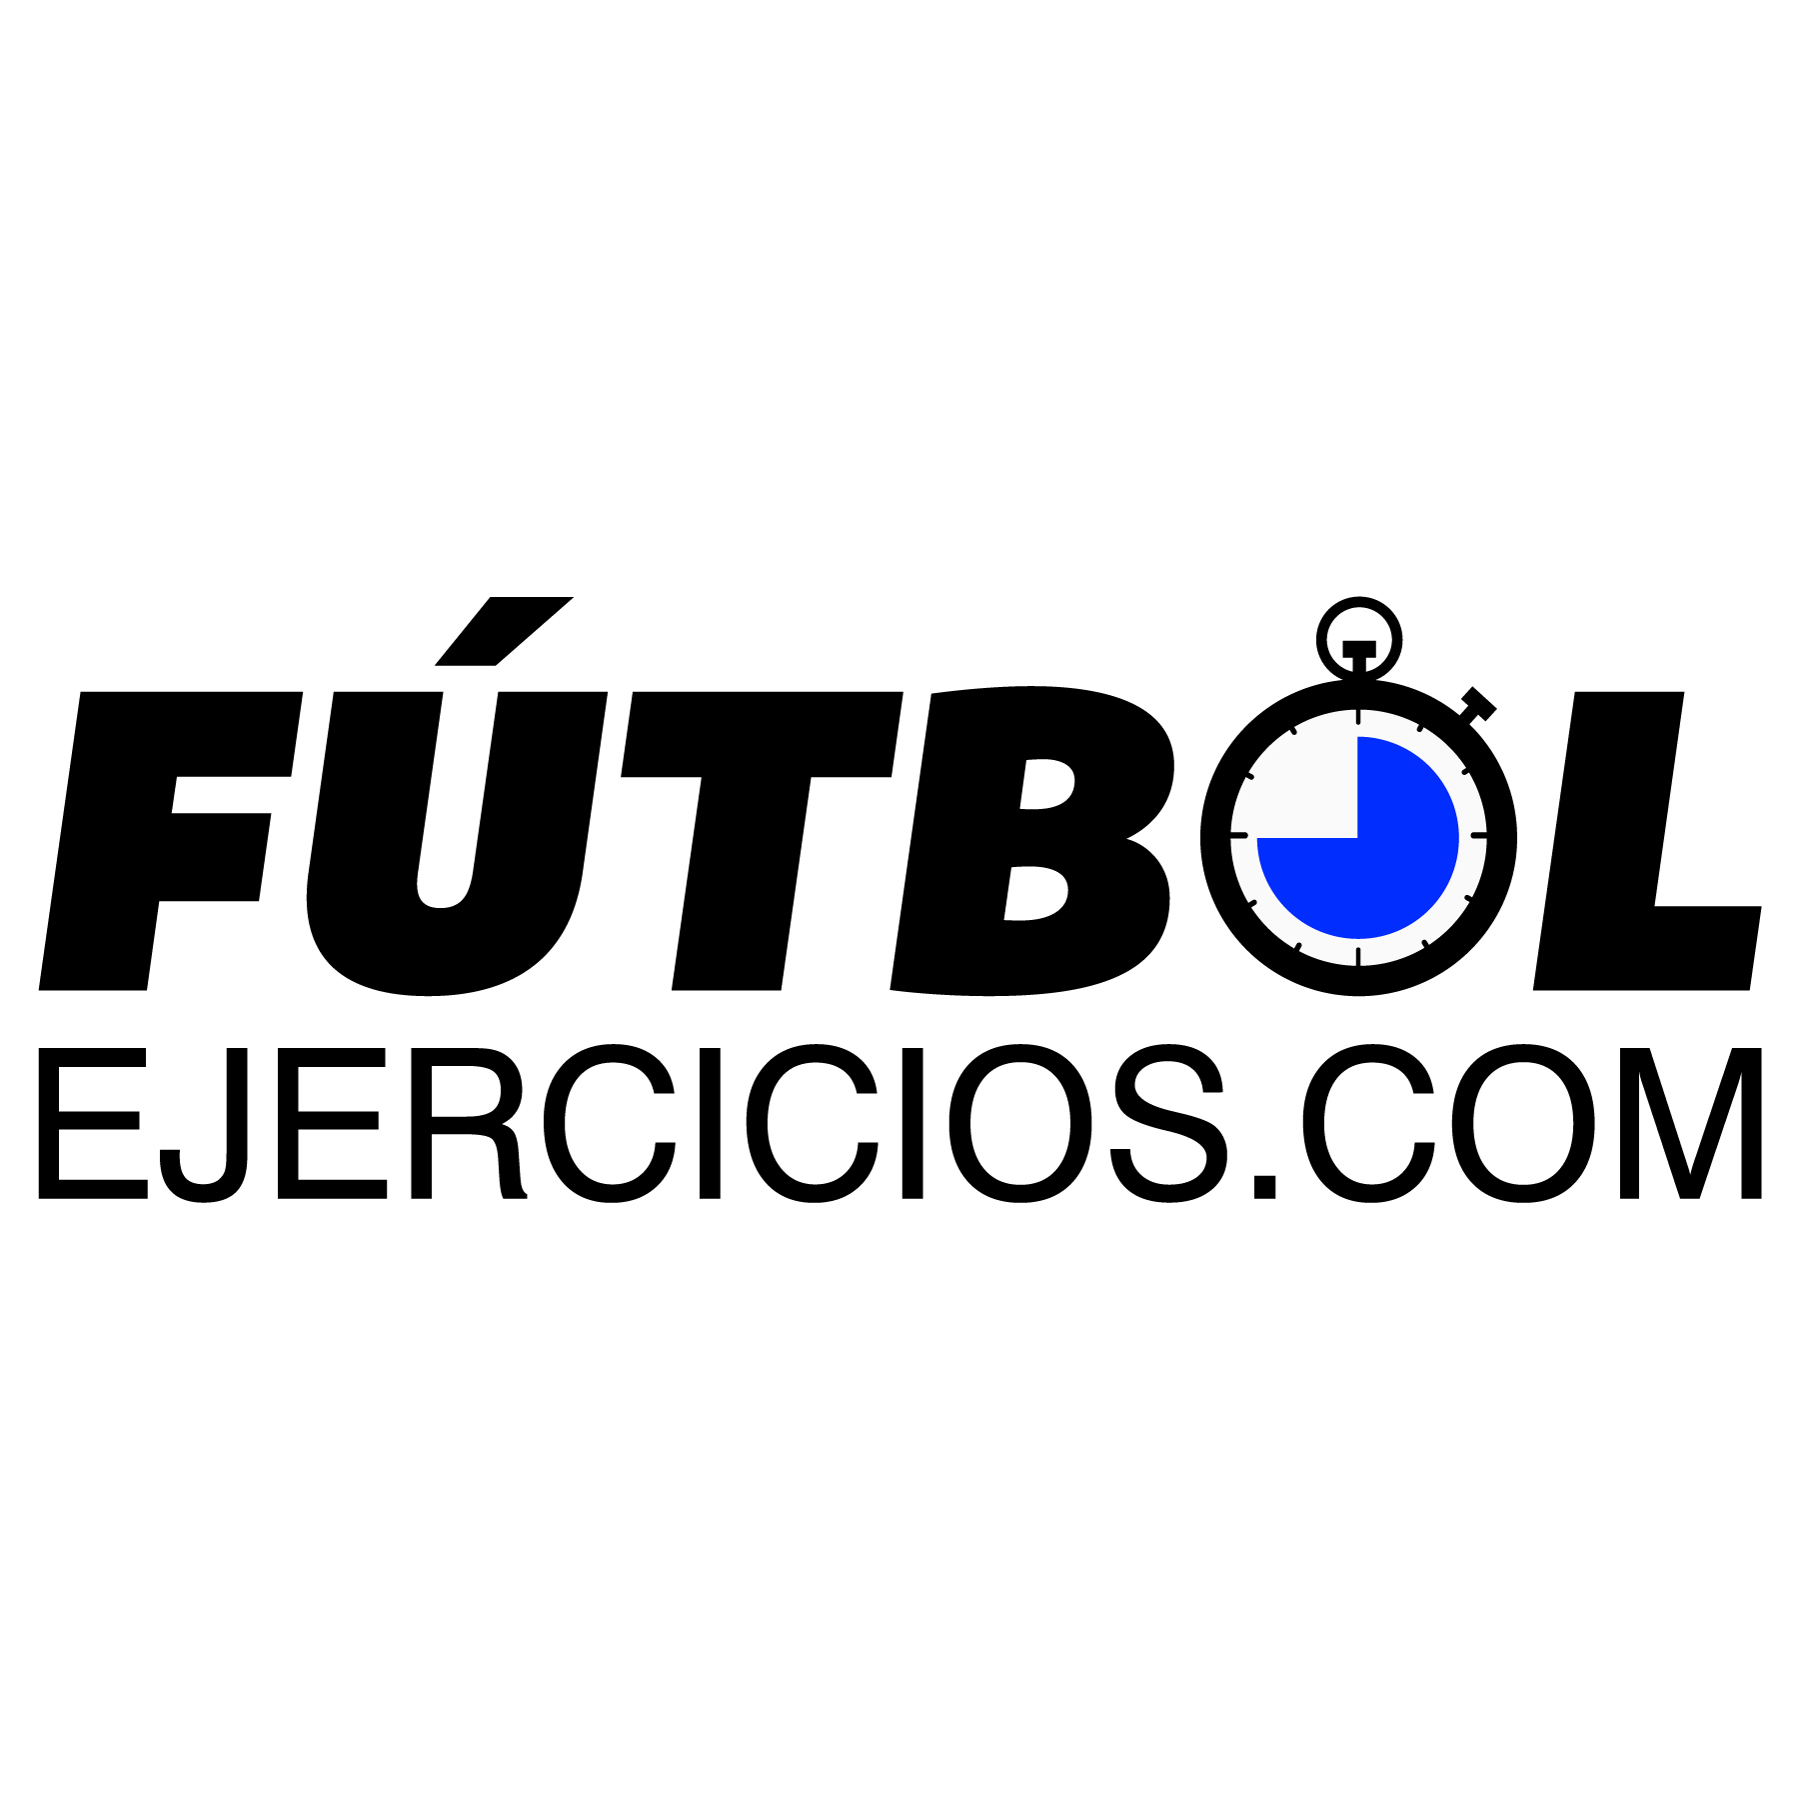 (c) Futbolejercicios.com